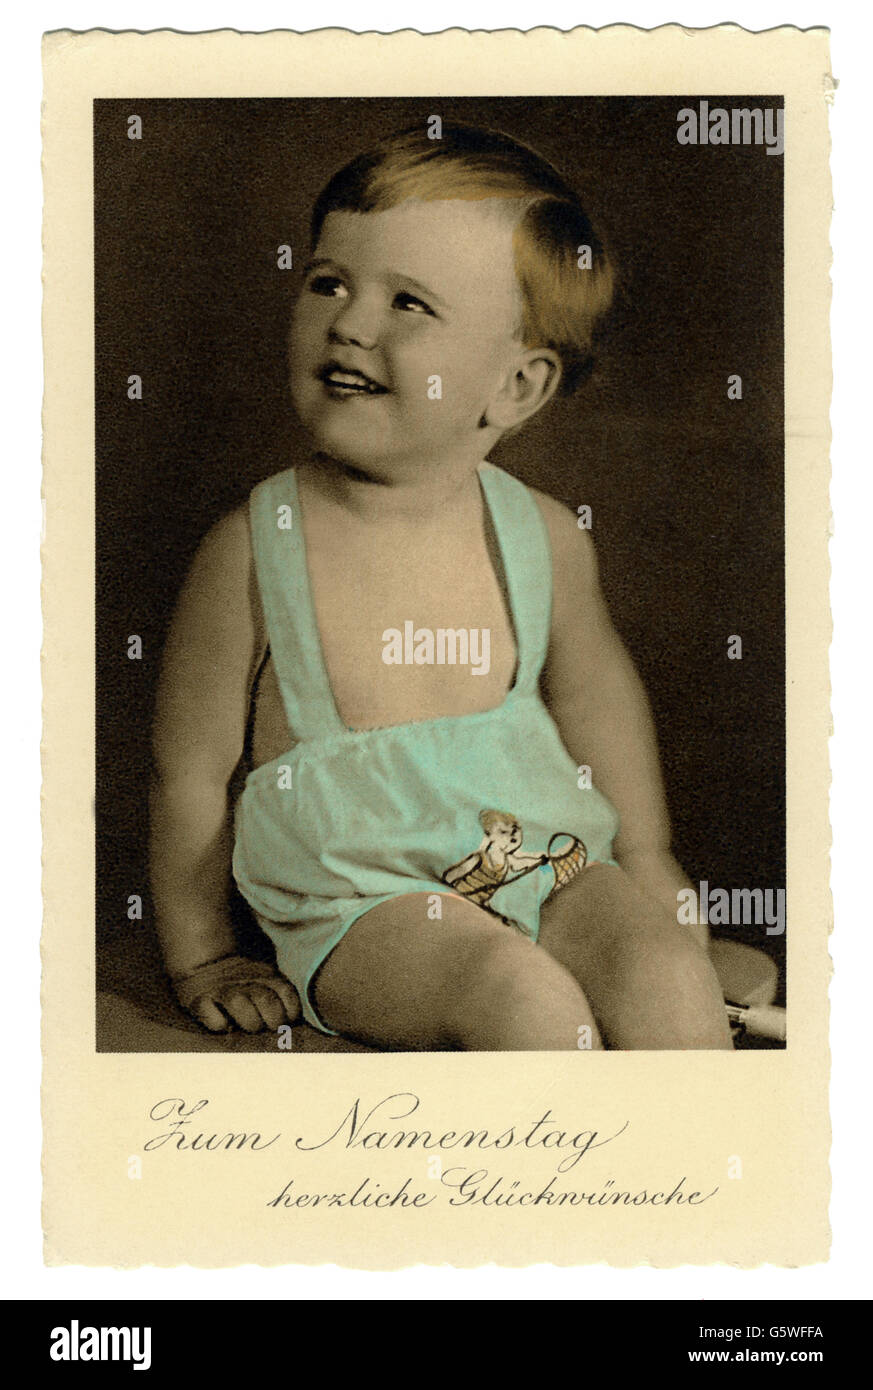 Festivités, cartes de voeux nom jour, 'Zum Namenstage herzliche Glückwünsche' (souhaits les plus chaleureux pour votre nom), petit garçon, carte postale photo colorée, années 1930, droits-supplémentaires-Clearences-non disponible Banque D'Images